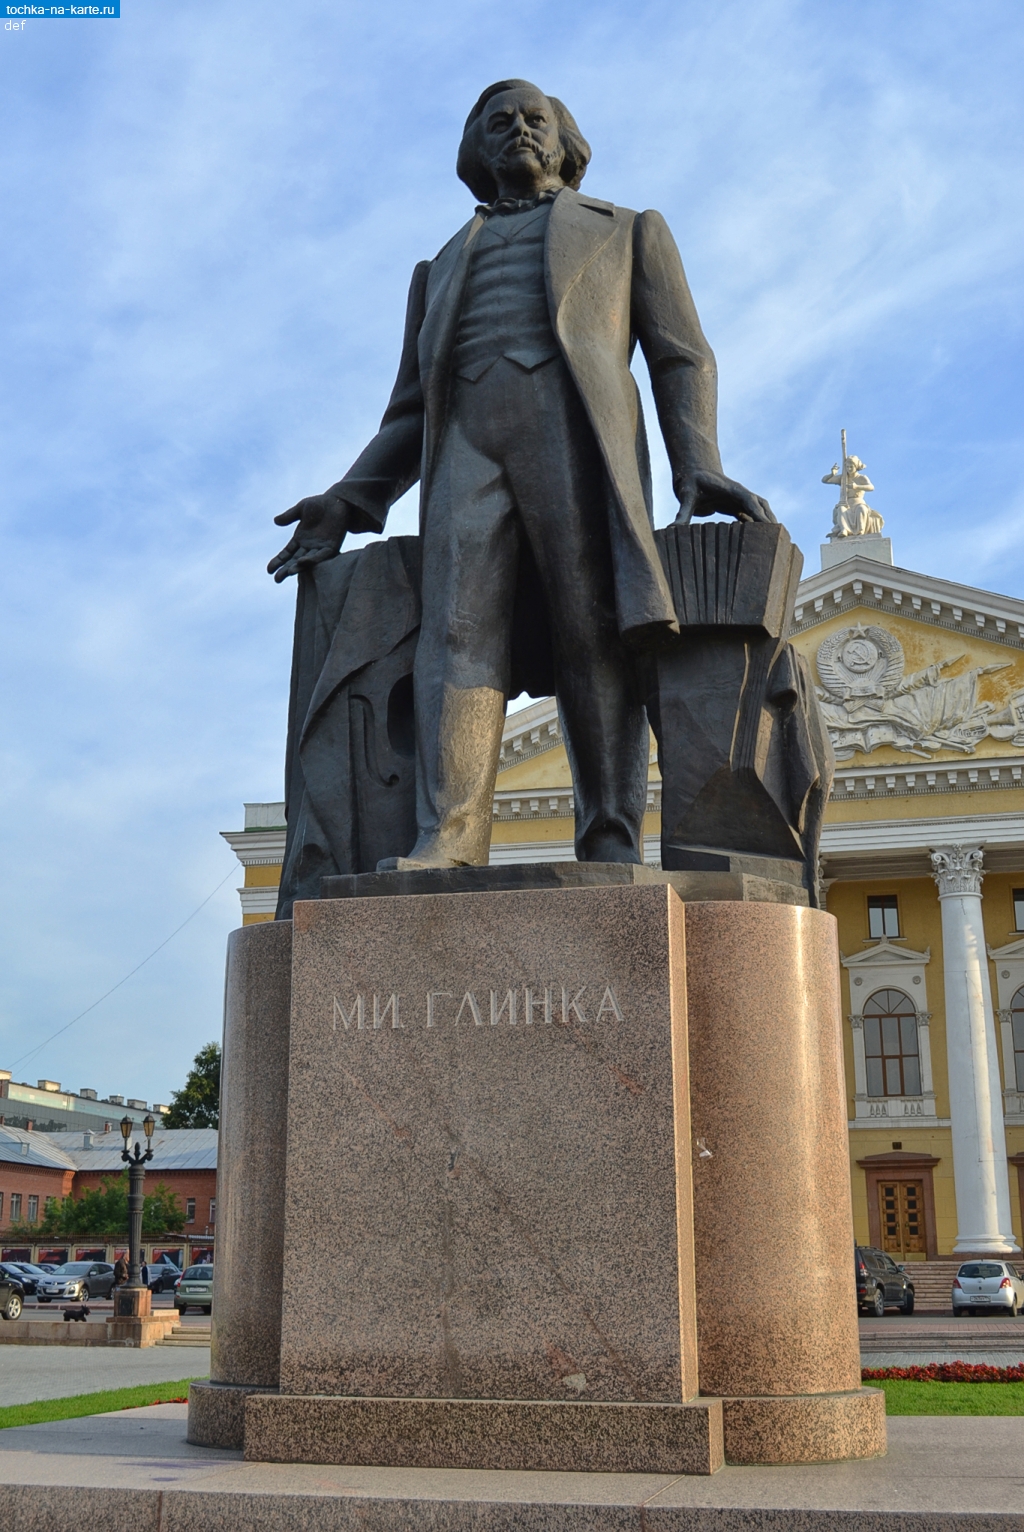 Челябинская область. Памятник М.И.Глинке в Челябинске